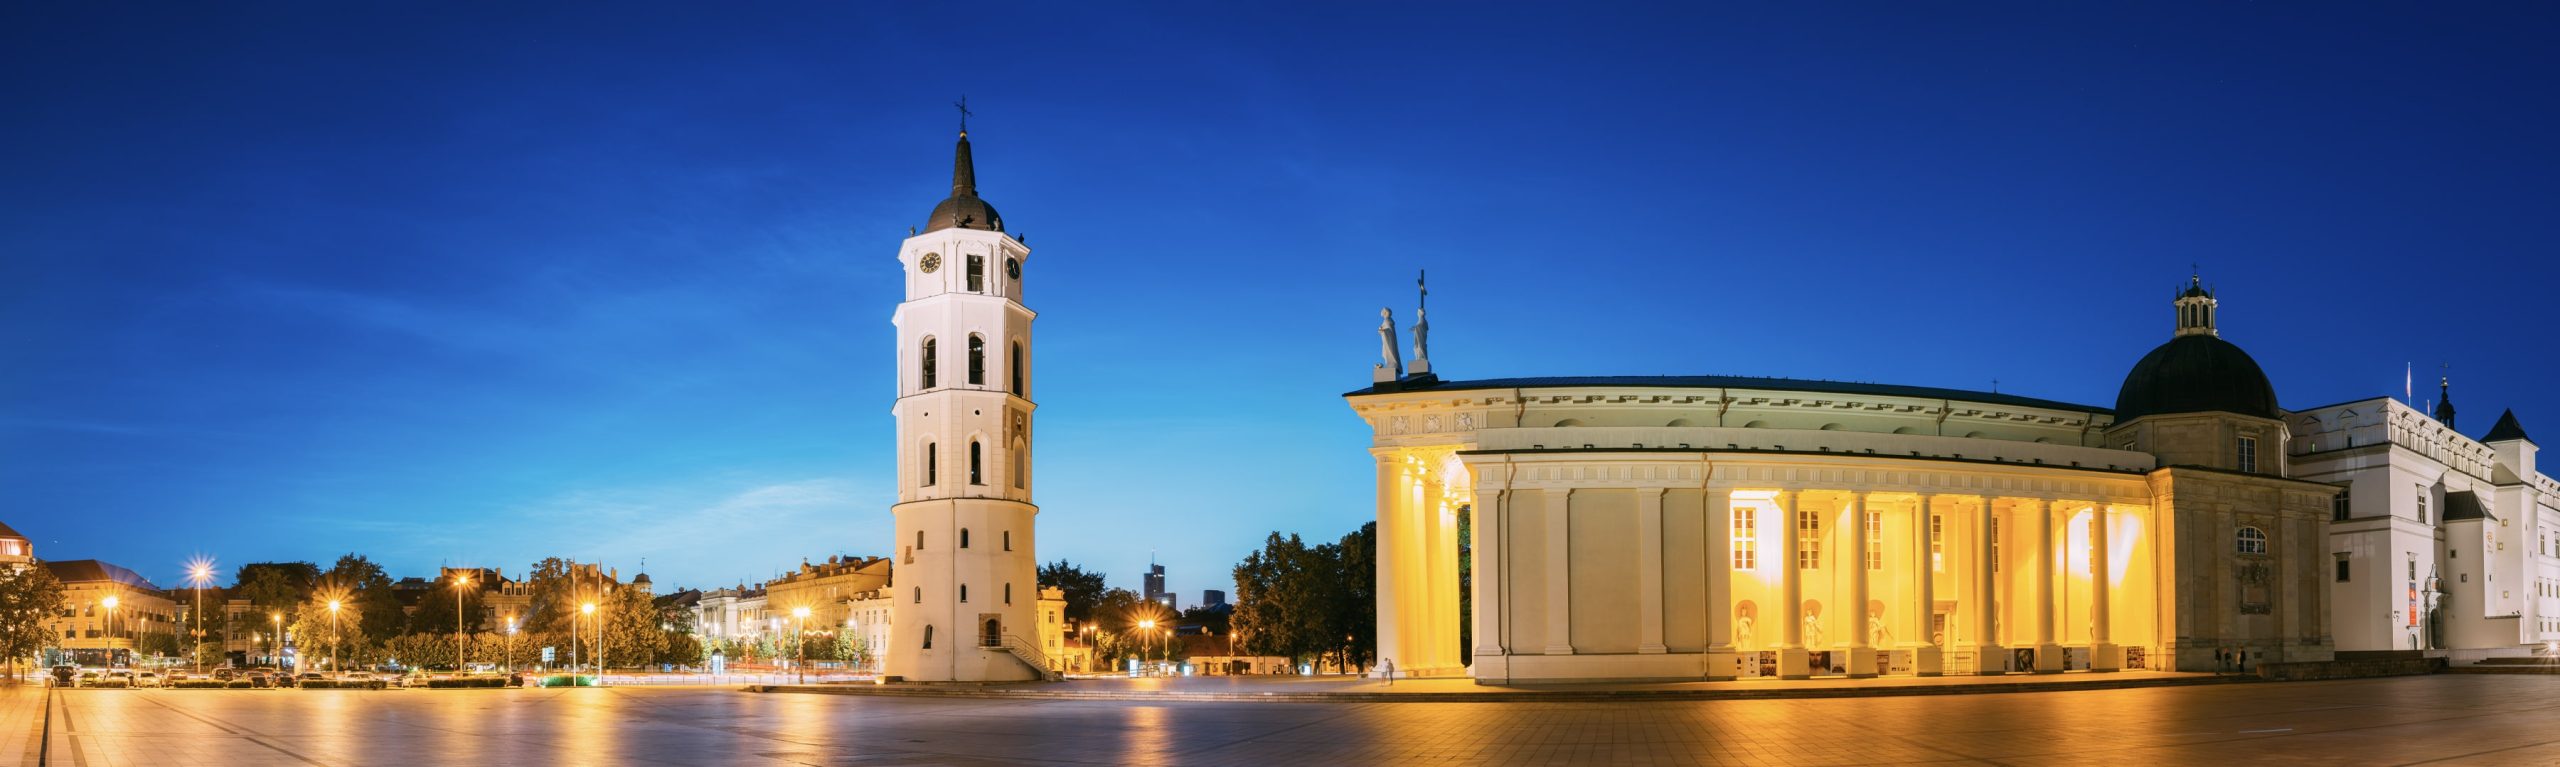 About Vilnius